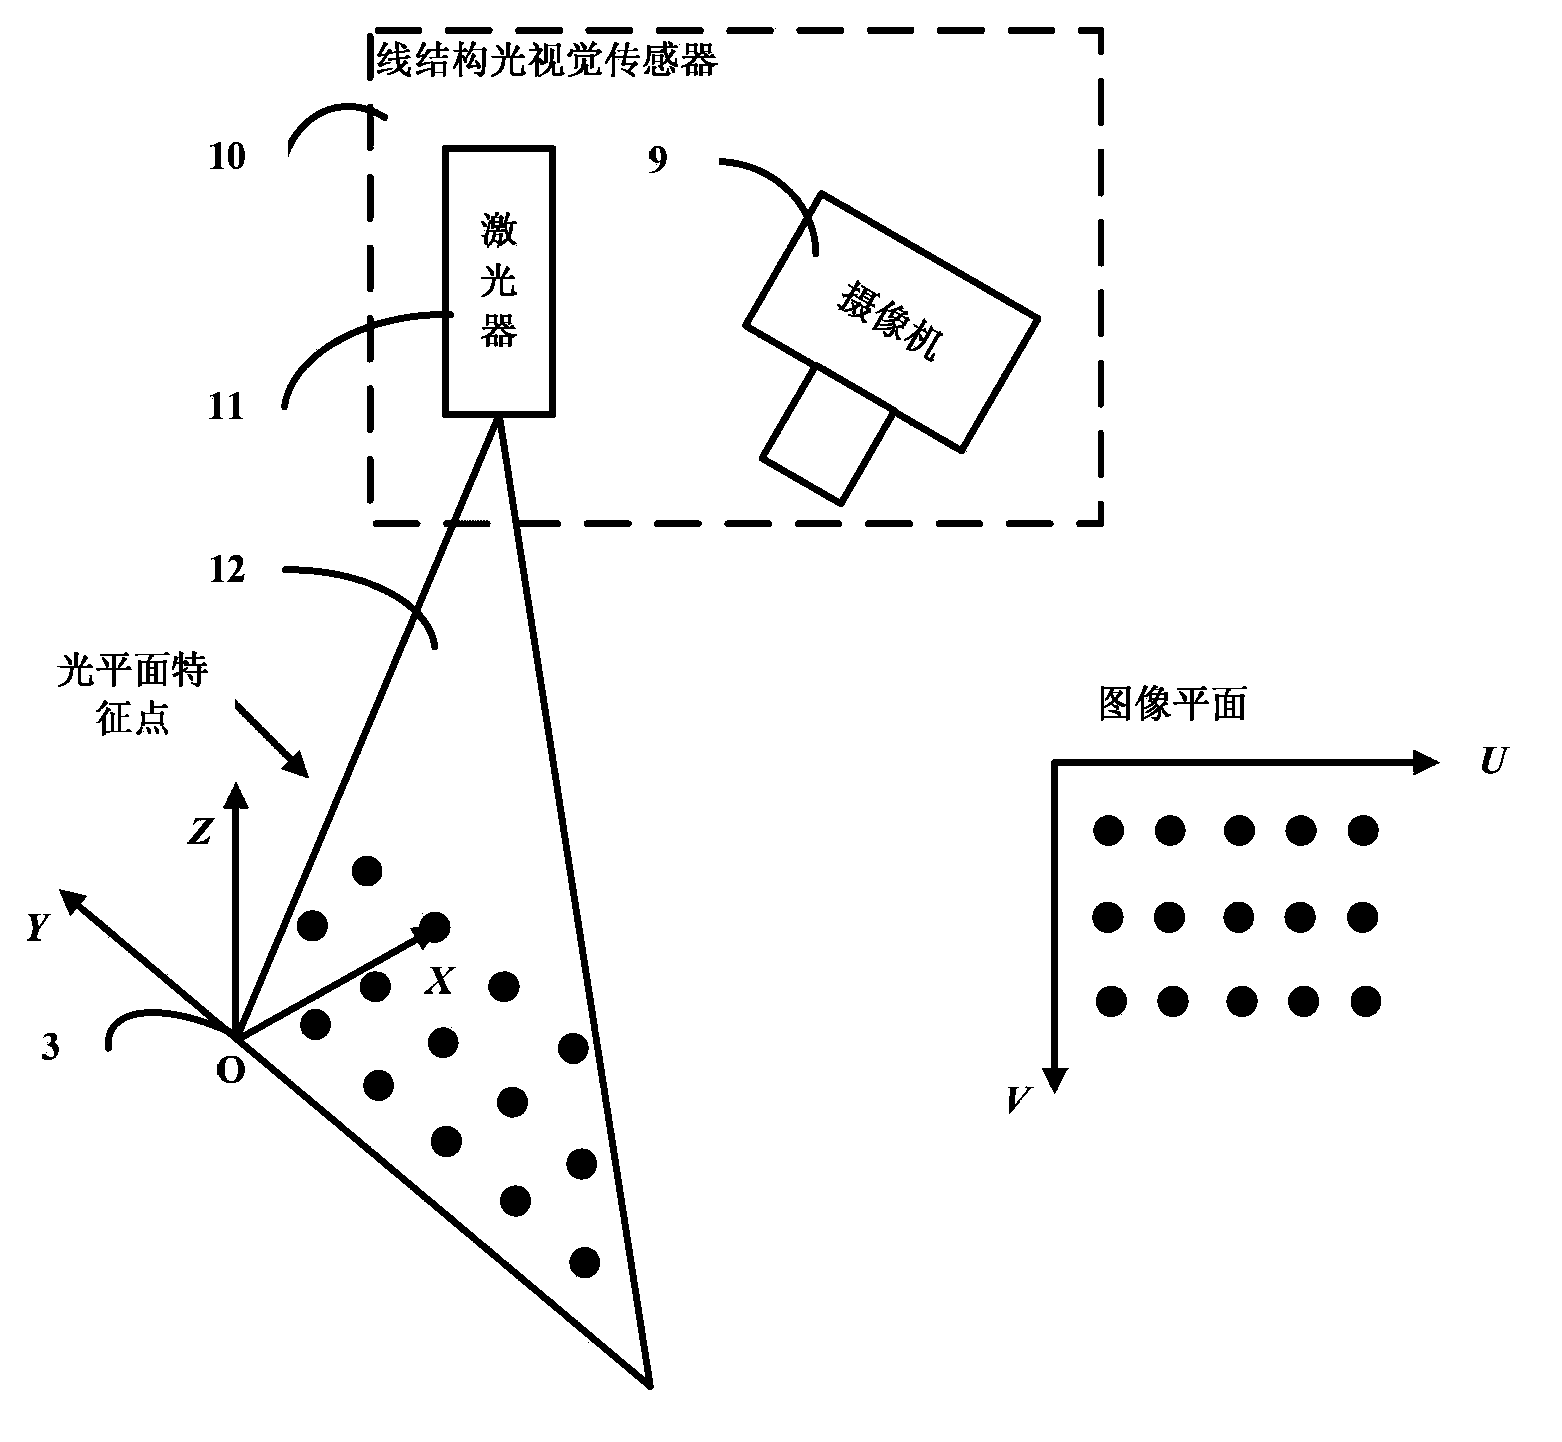 Direct calibration method for line structured light vision sensor